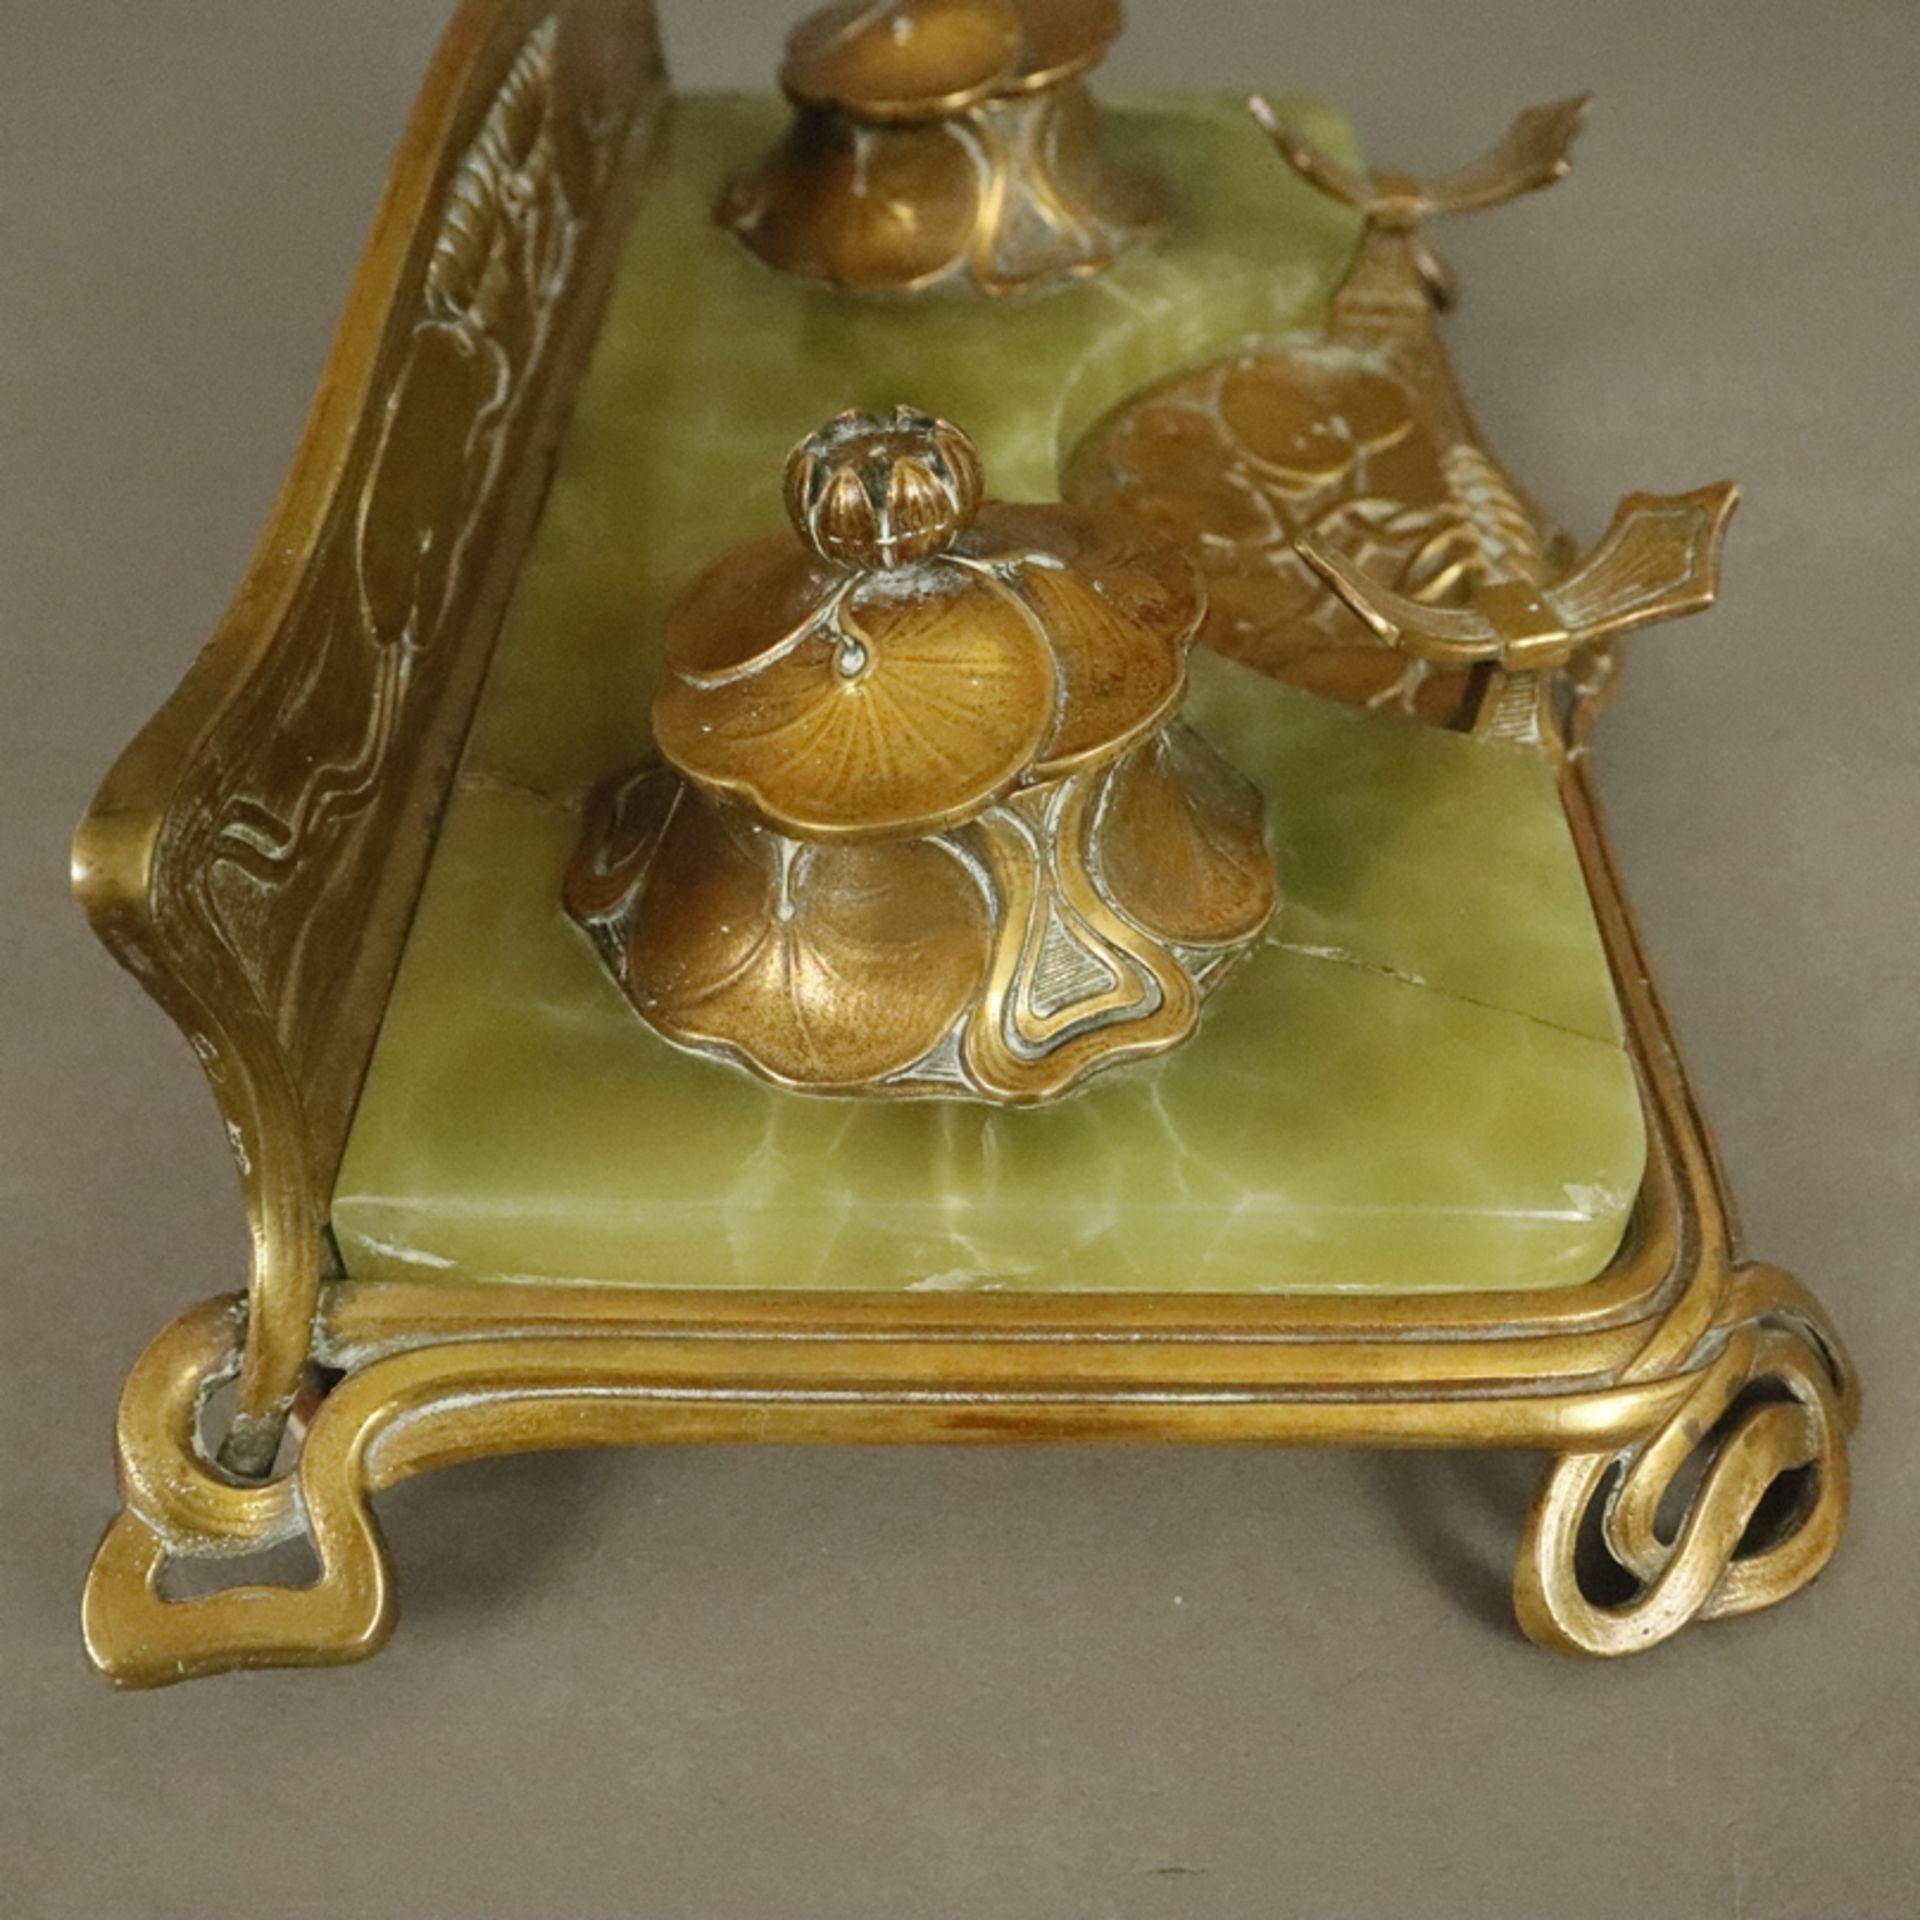 Jugendstil-Schreibtischgarnitur - um 1900/10, geschwungenes Bronzegestell mit Seerosen-Reliefdekor, - Image 11 of 12